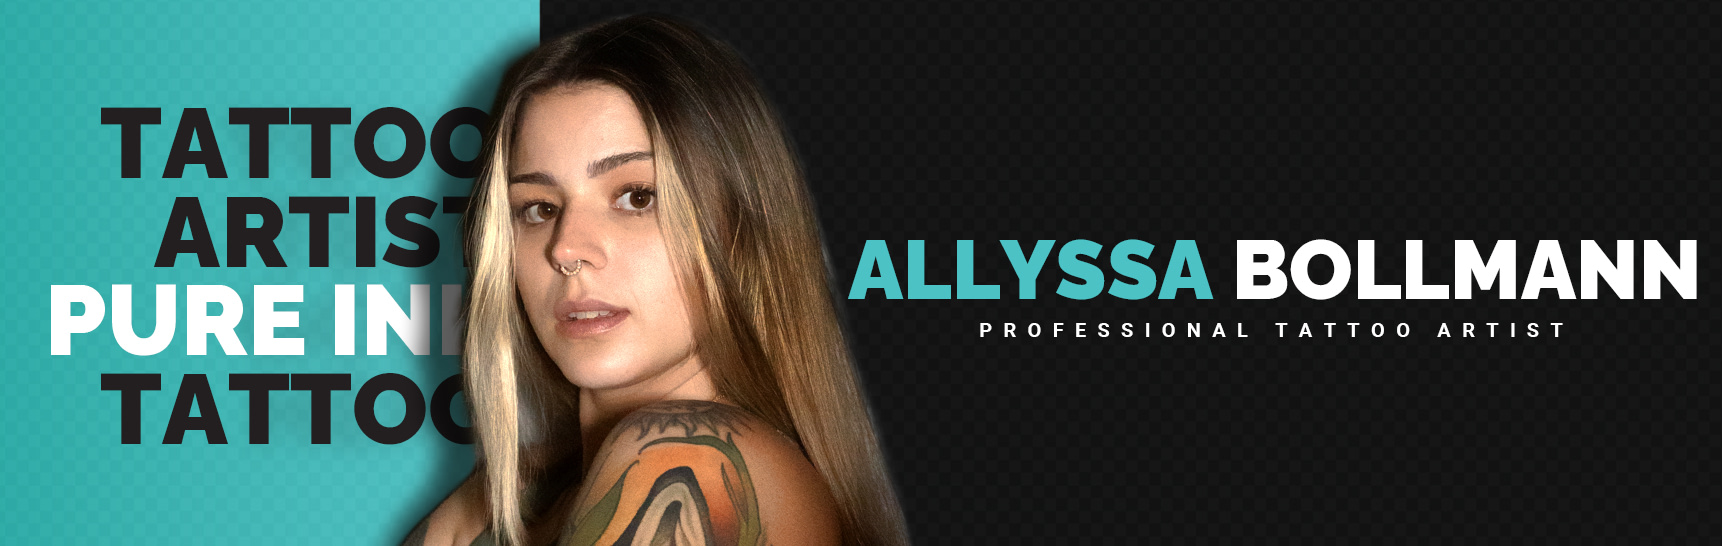 Allyssa Bollmann - Tattoo Artist - Pure Ink Tattoo Studio NJ